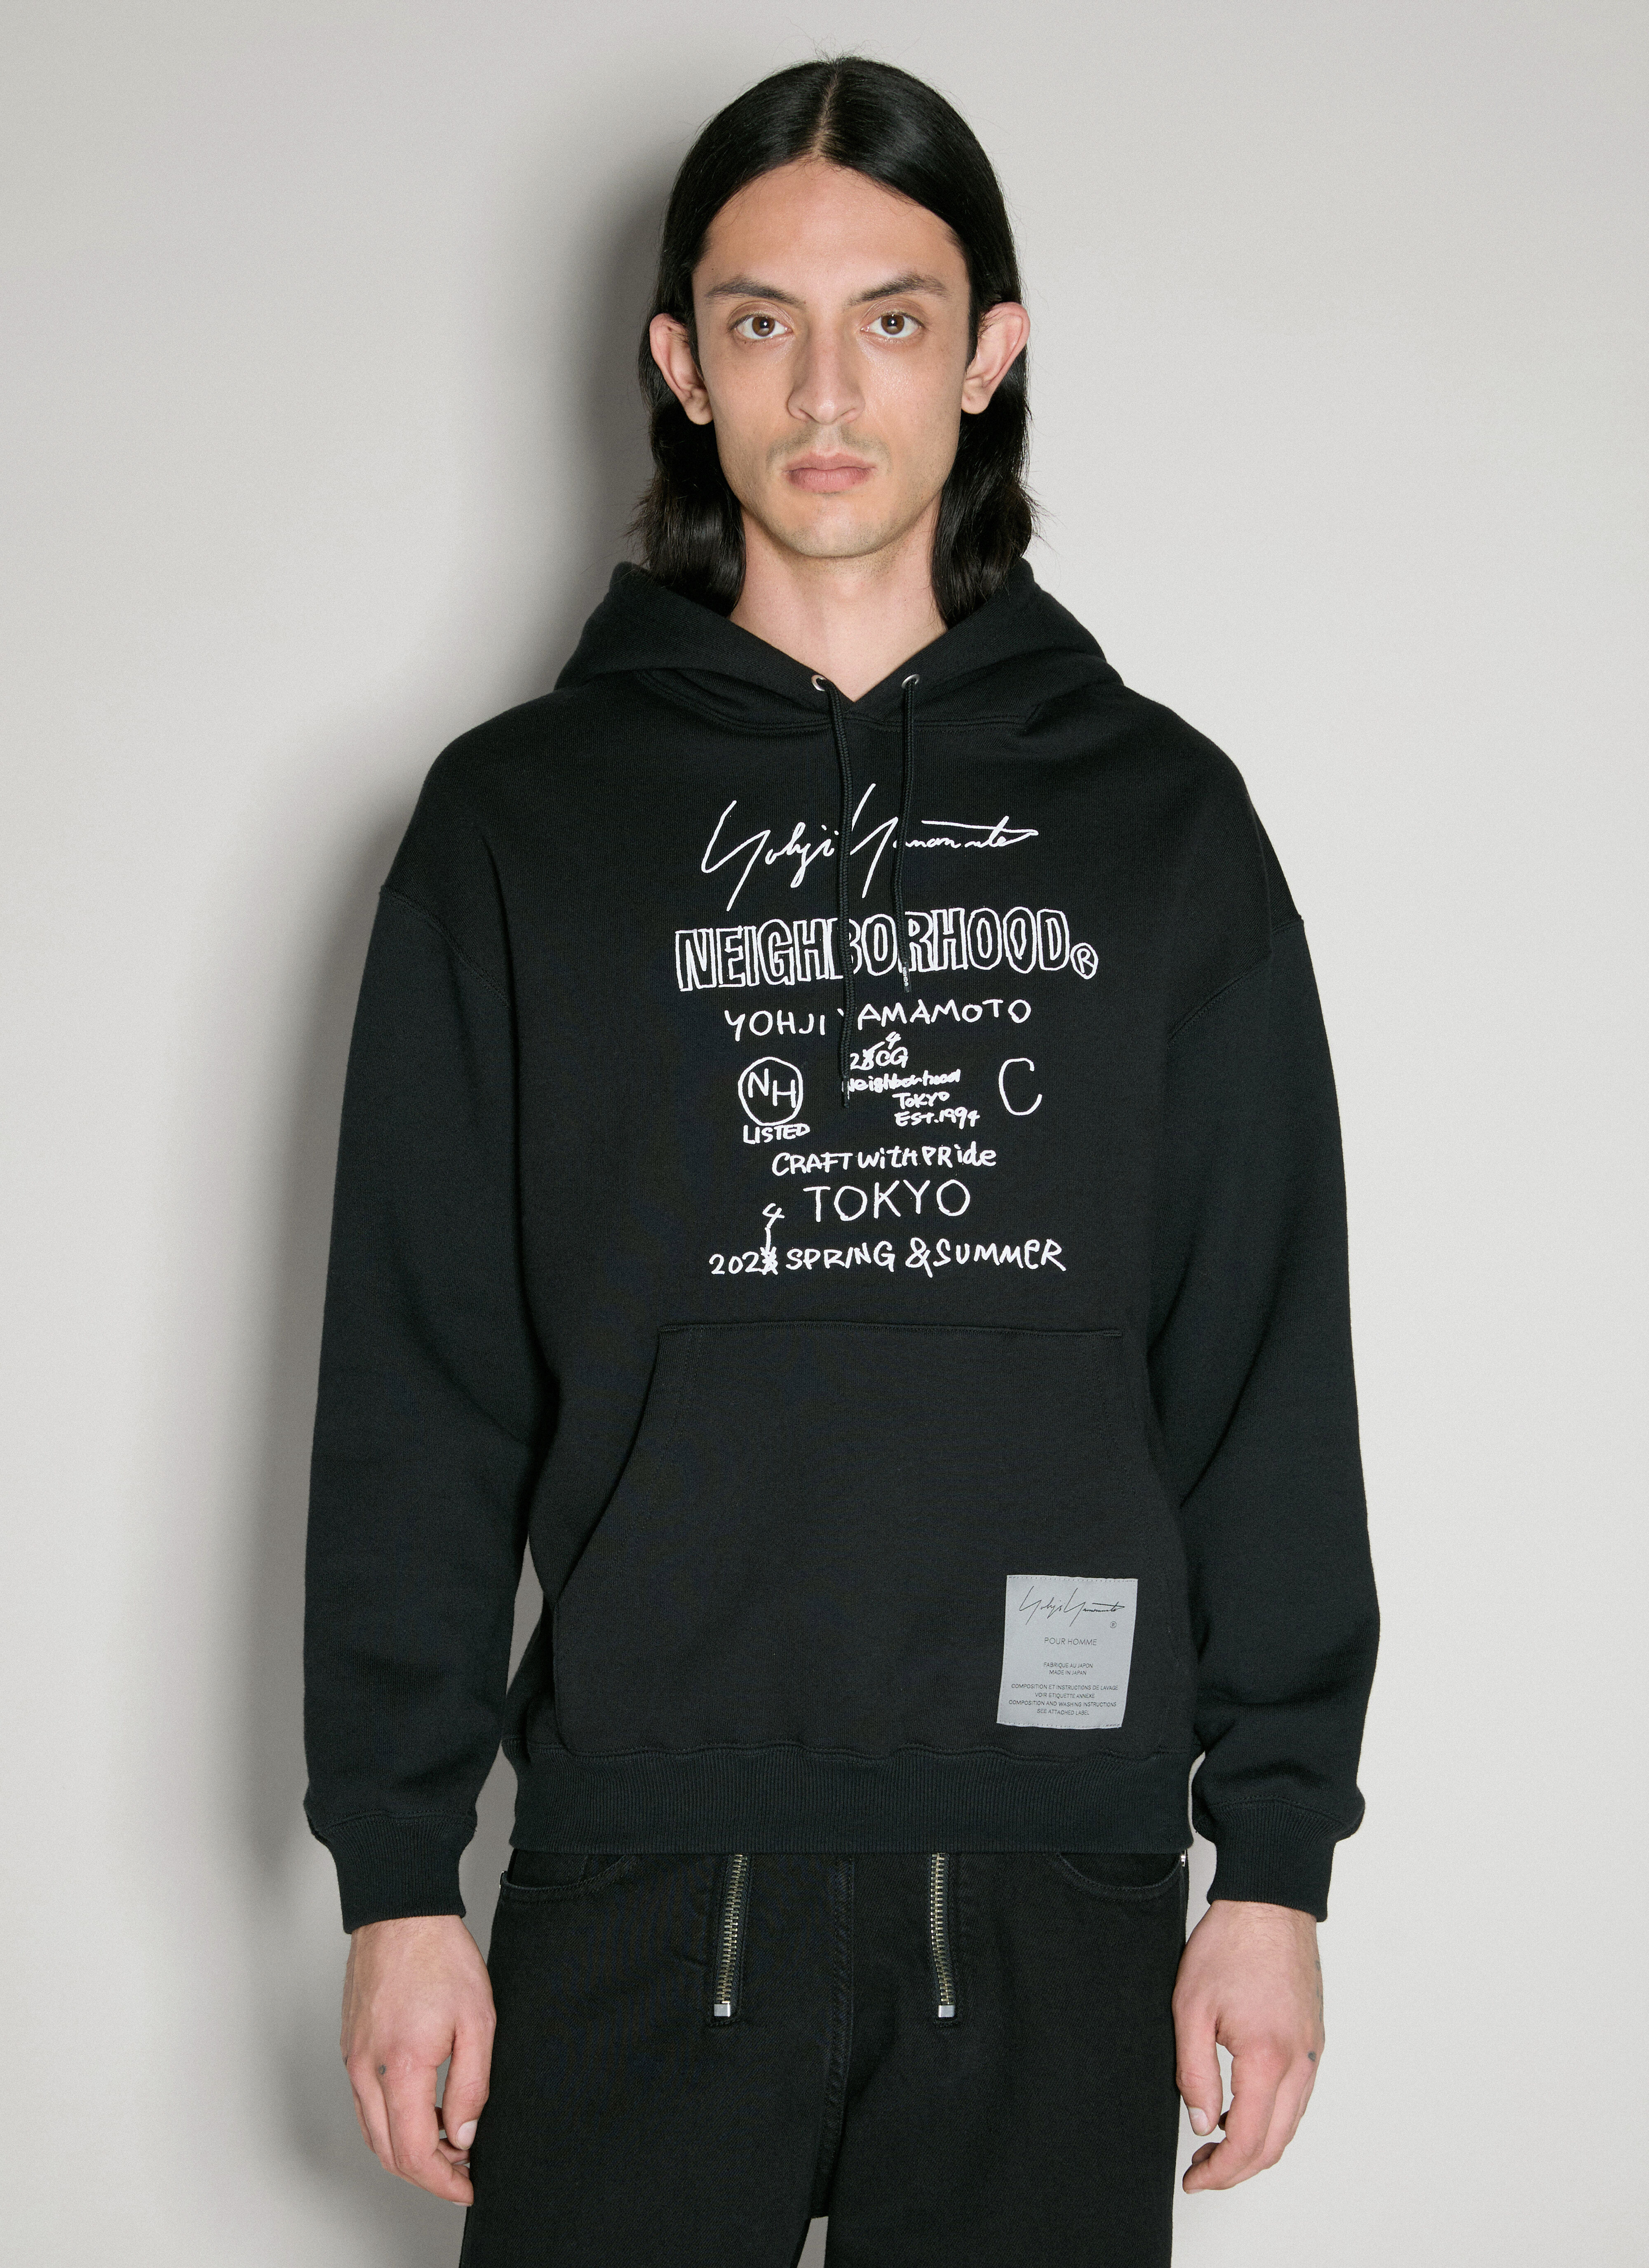 Yohji Yamamoto Neighborhood Hooded Sweatshirt Black yoy0154015